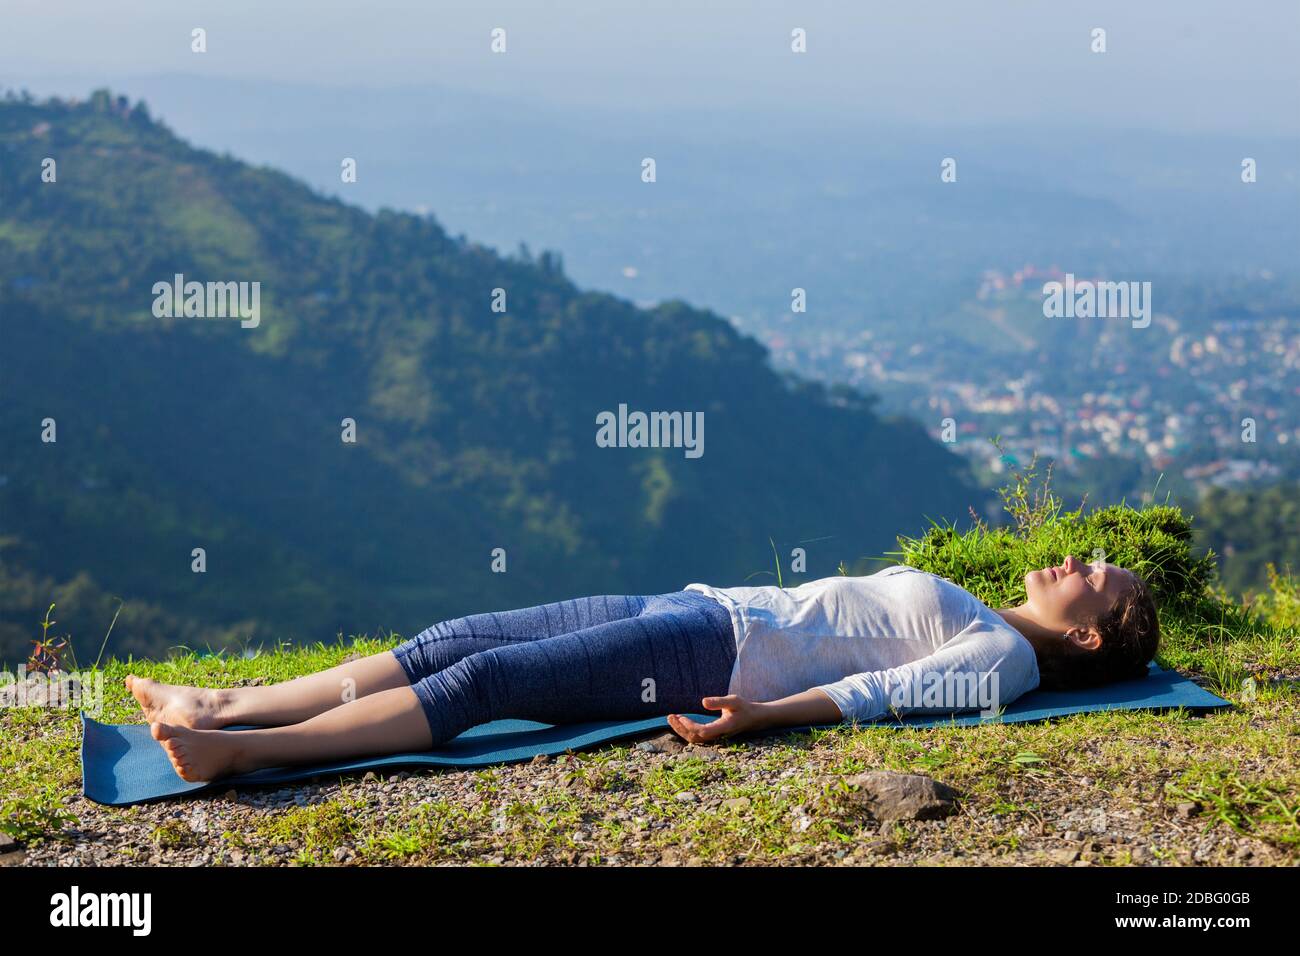 Femme se détend dans le yoga asana Savasana - cadavre pose à l'extérieur dans l'Himalaya. Himachal Pradesh, Inde Banque D'Images